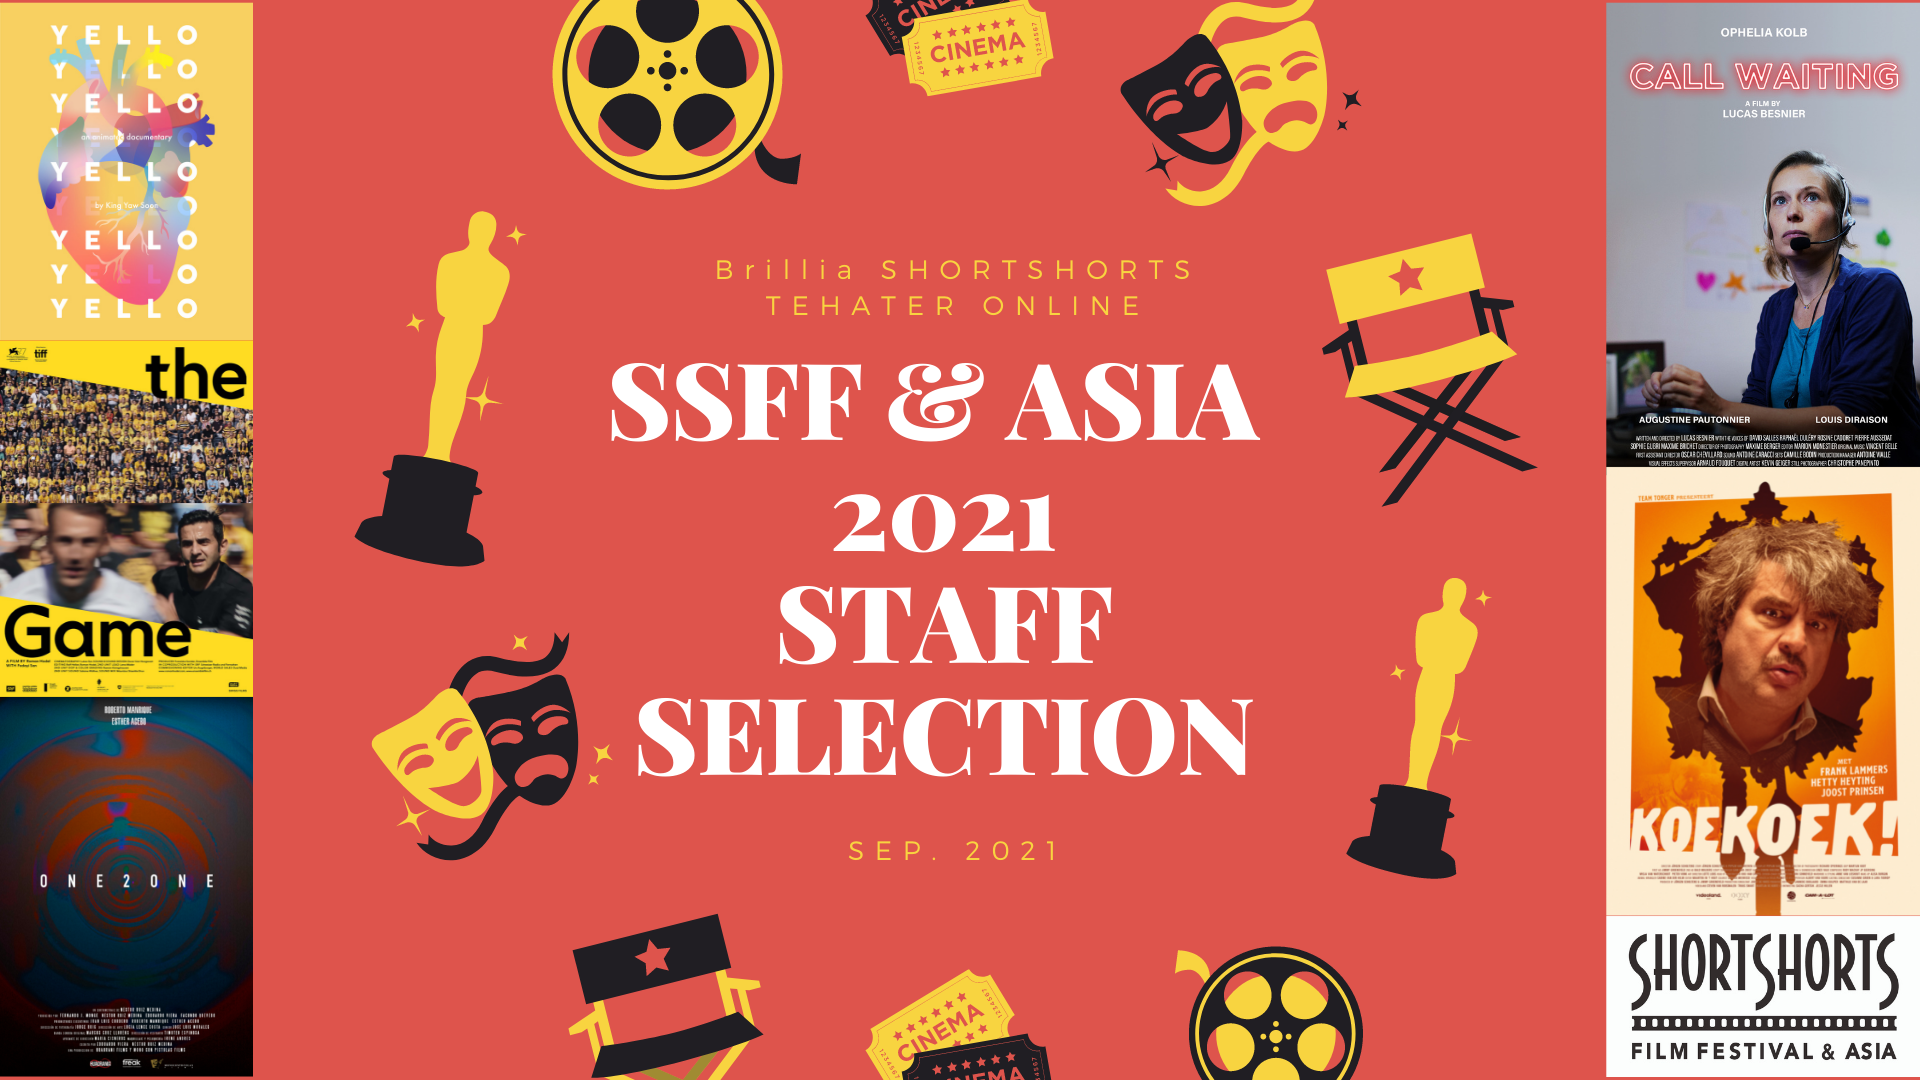 オンラインシアターでSSFF ＆ ASIAスタッフおススメ特集を配信開始！ Short Shorts Film Festival & ASIA